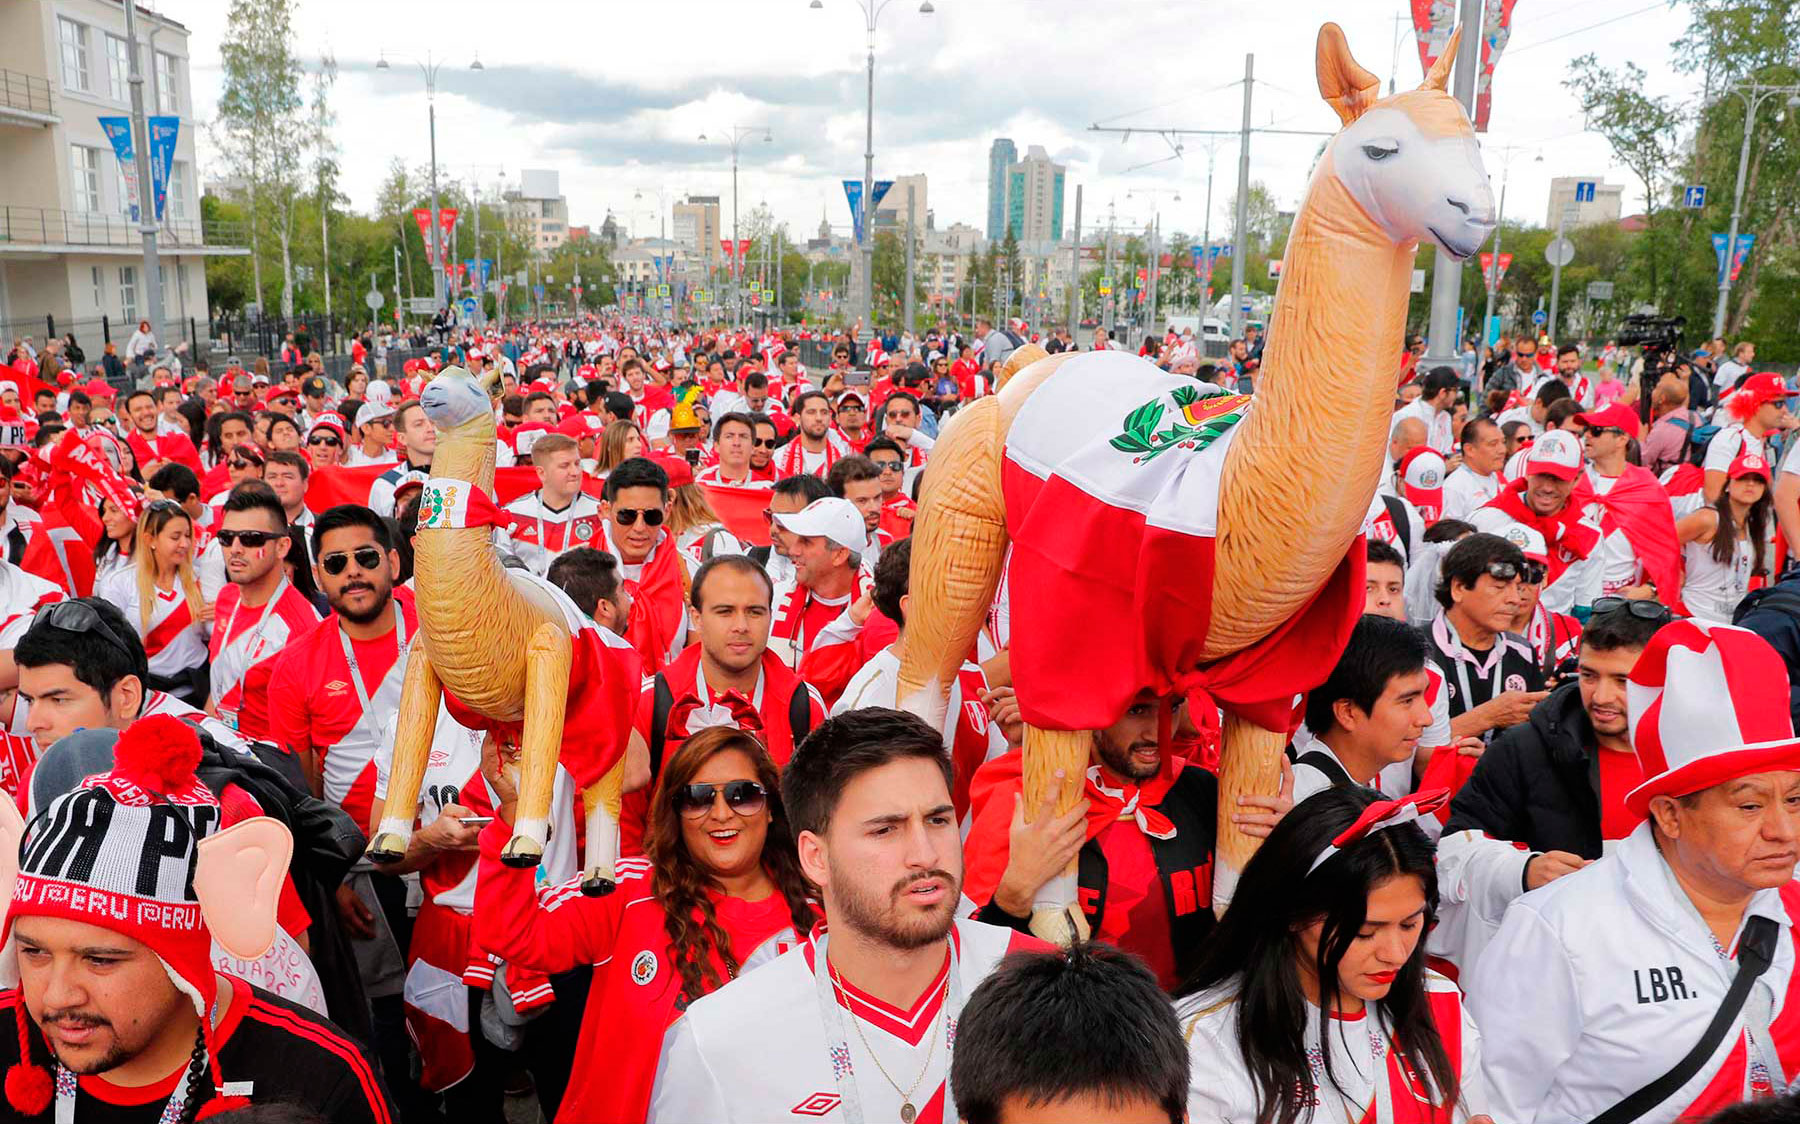 2018-06-21 636651876015591396 Mundial de Fútbol de Rusia 2018 Grupo C Partido Aficionados peruanos en moscú